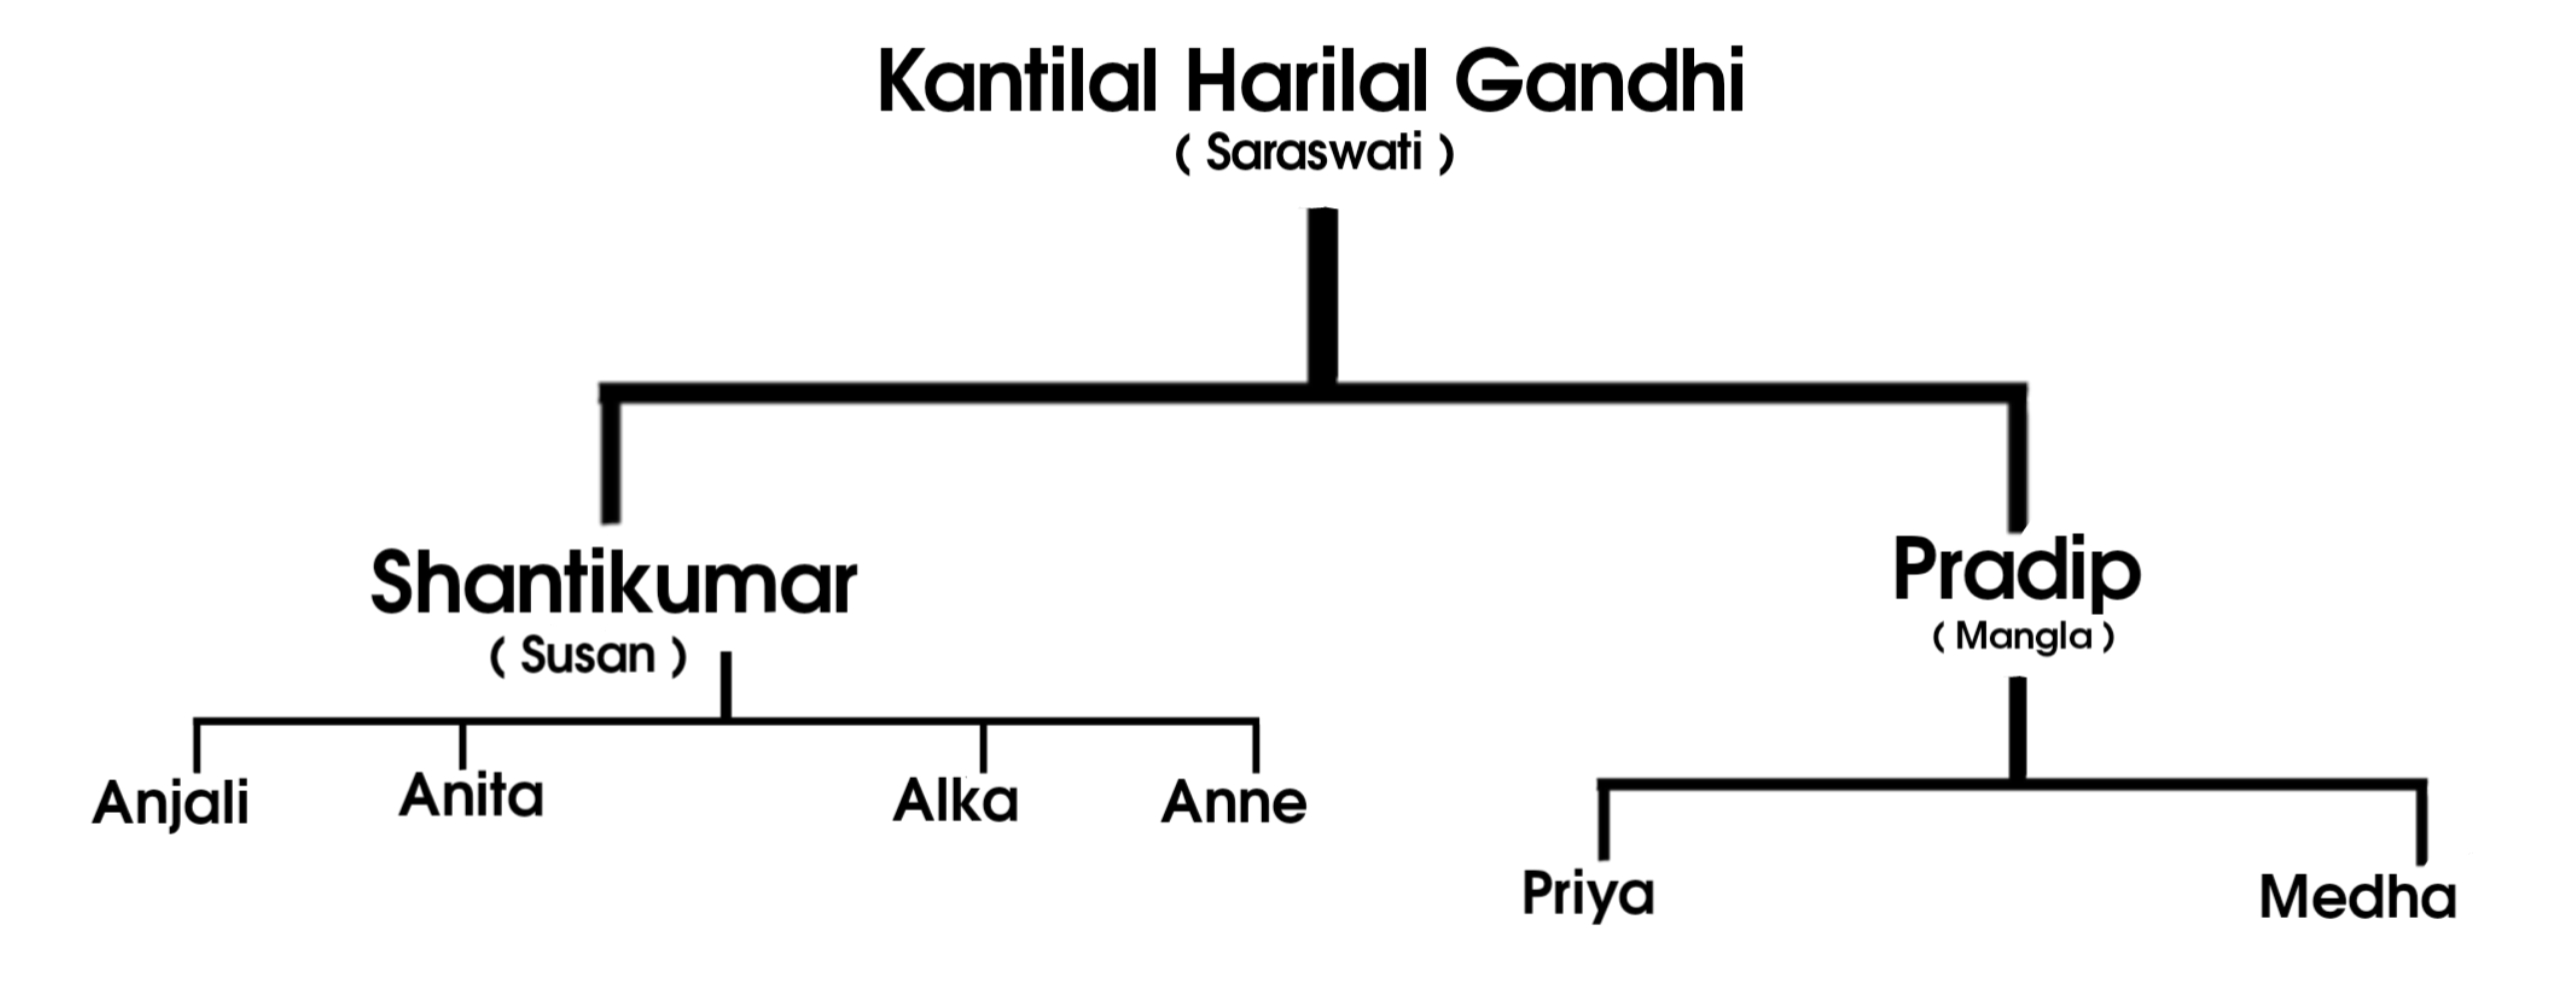 Kantilal Gandhi Family tree